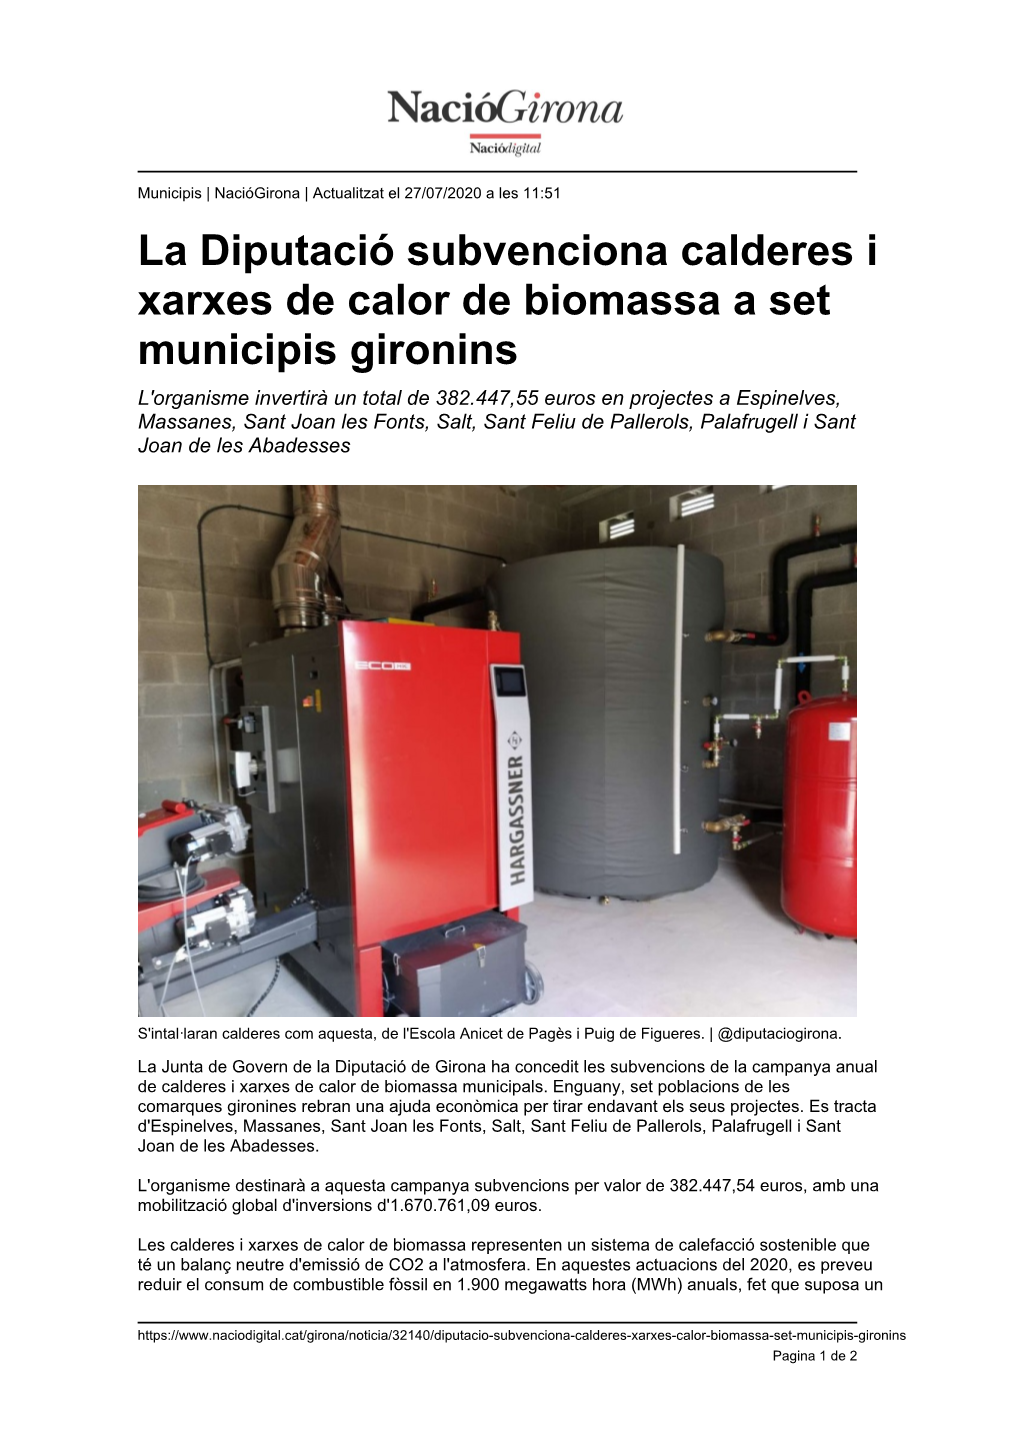 La Diputació Subvenciona Calderes I Xarxes De Calor De Biomassa A